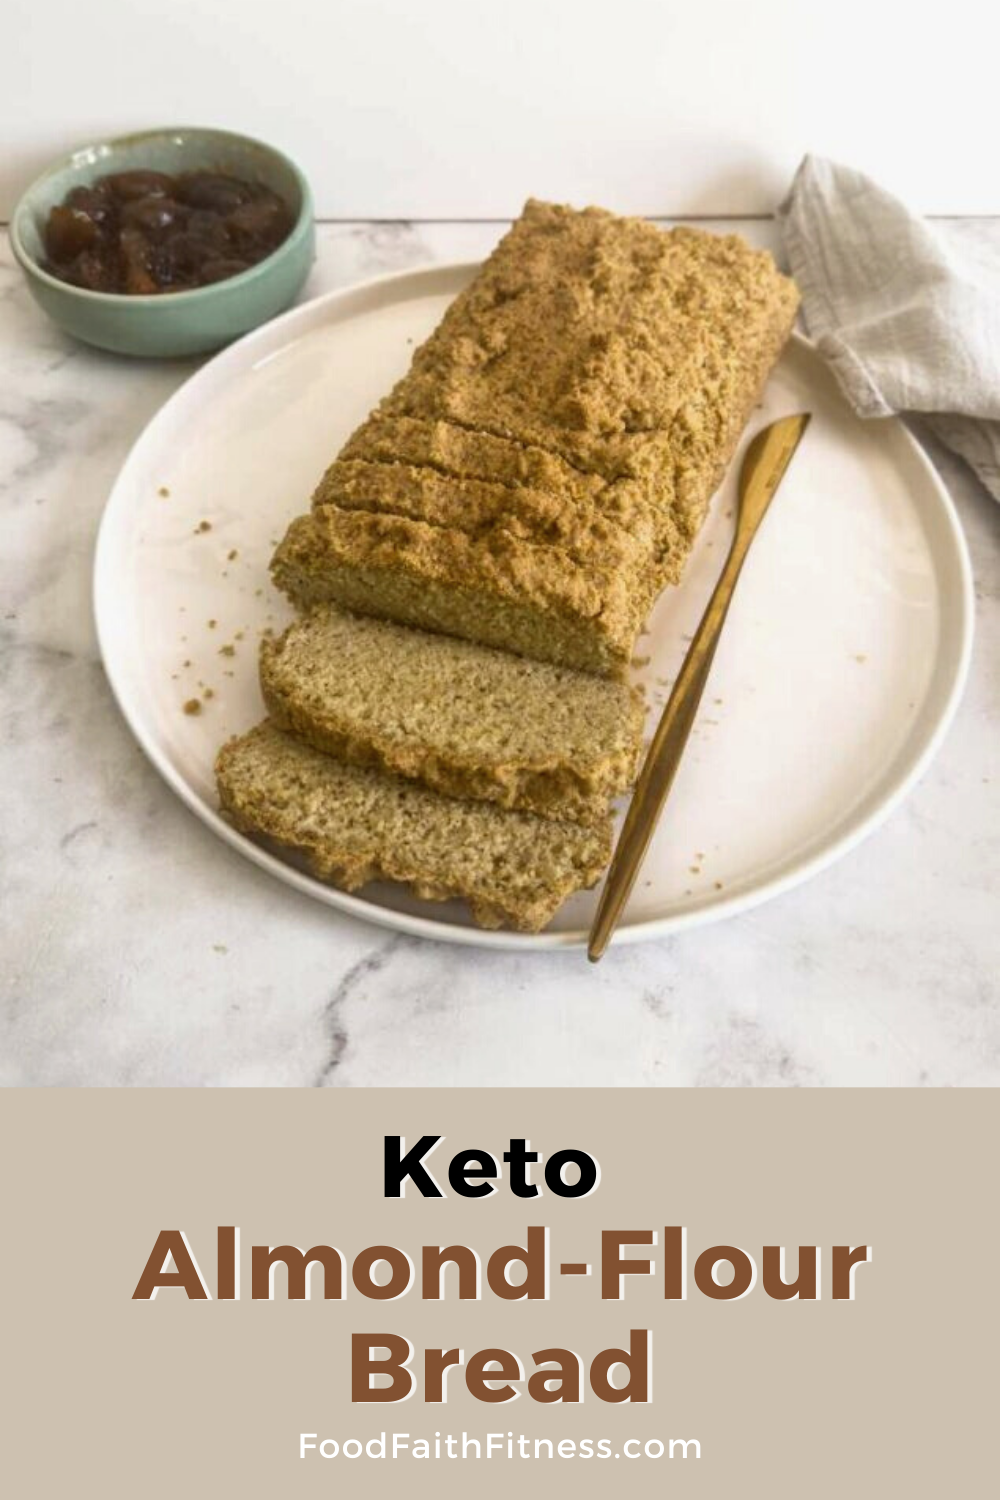 Keto Almond-Flour Bread (3g Net Carb) - Food Faith Fitness